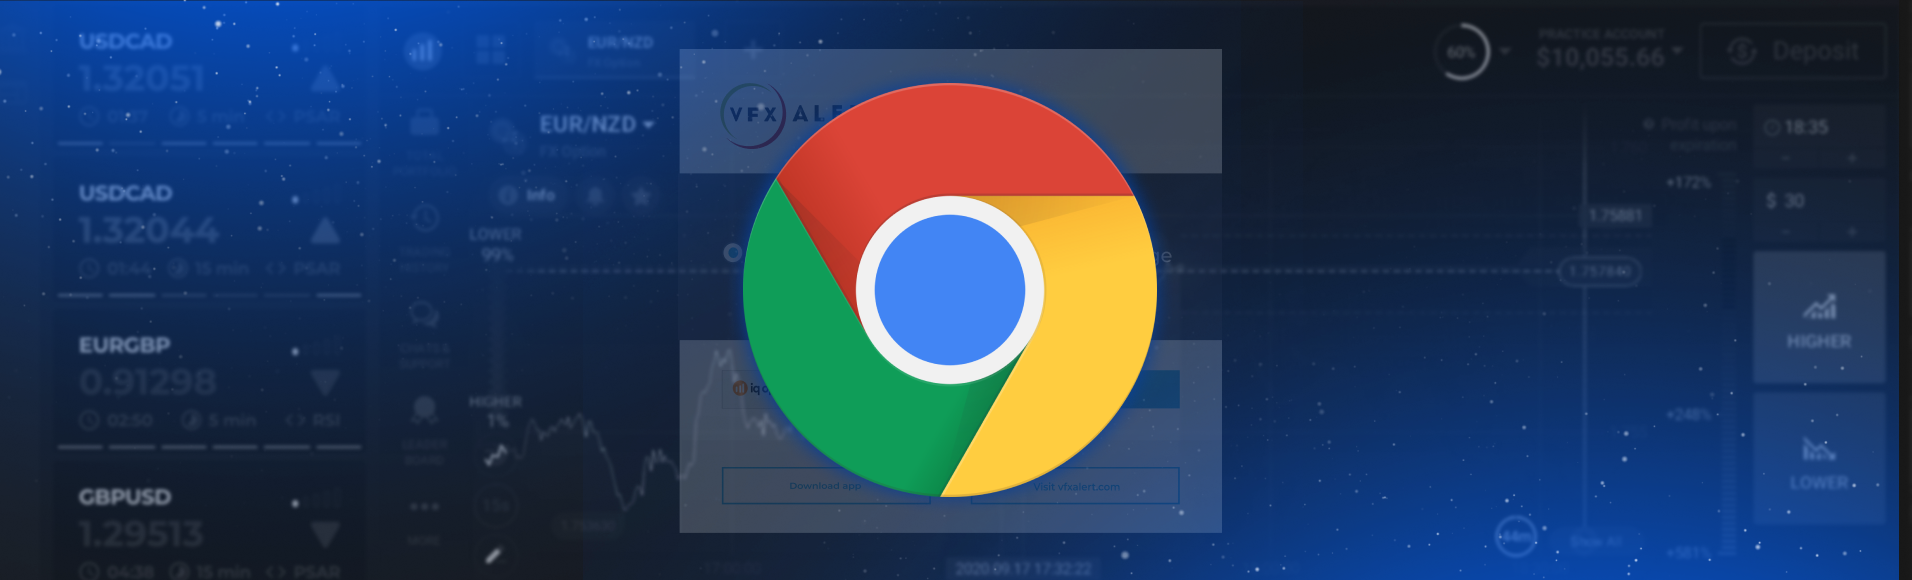 tín hiệu vfxAlert trong trình duyệt Chrome